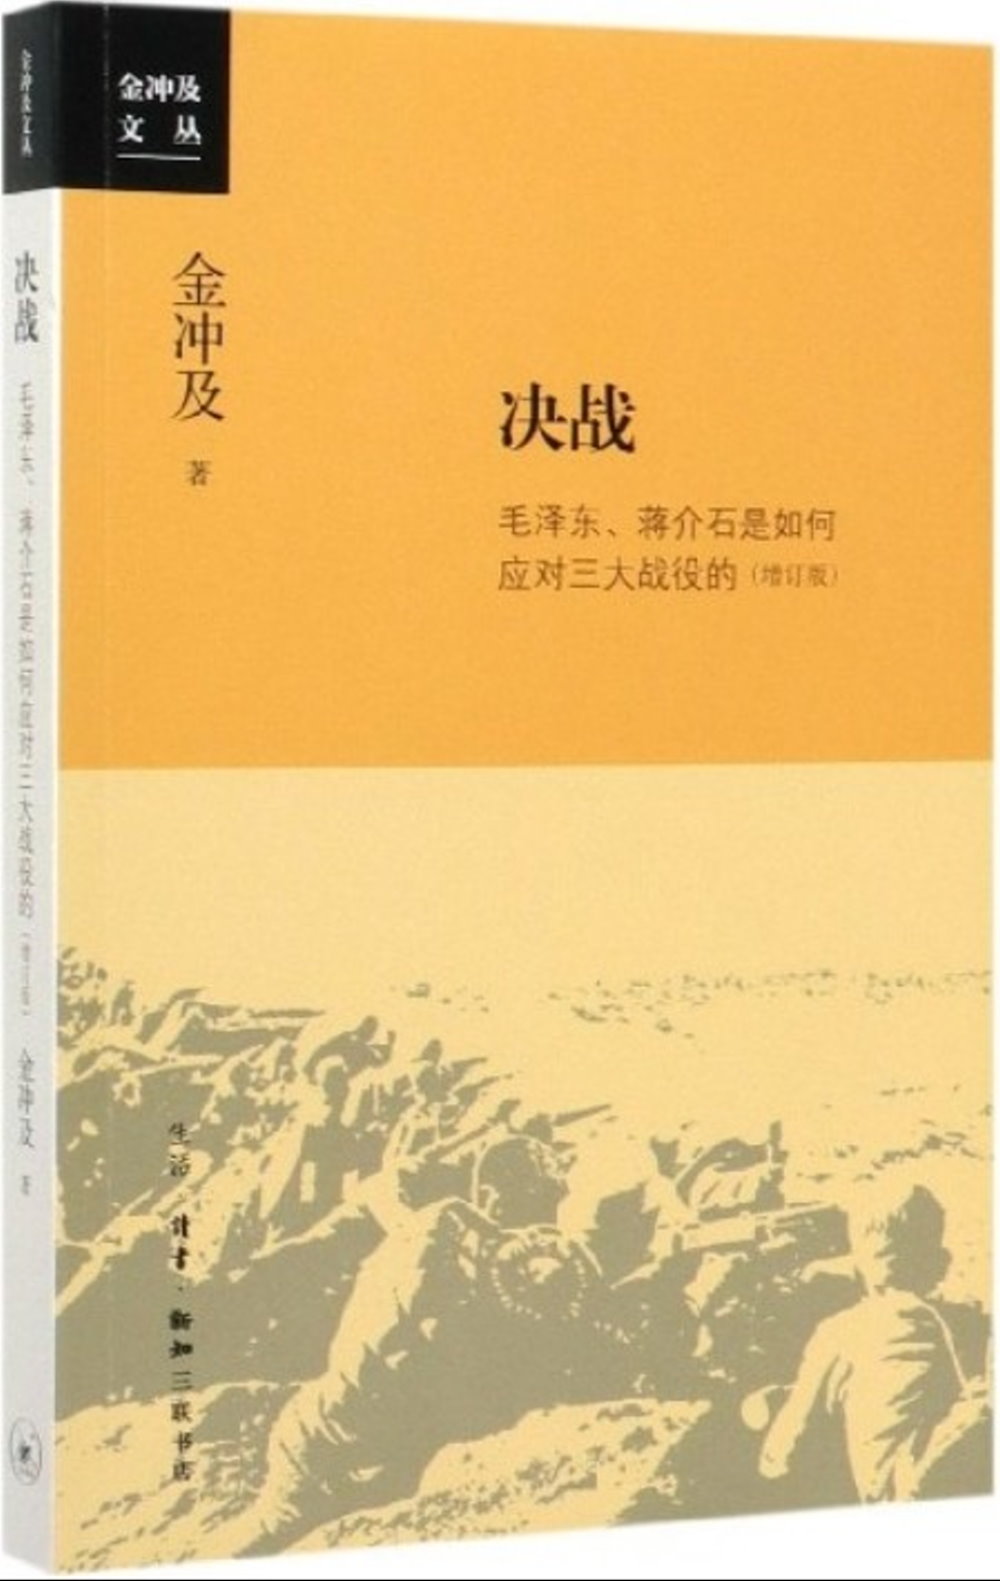 決戰：毛澤東、蔣介石是如何應對三大戰役的（增訂版）